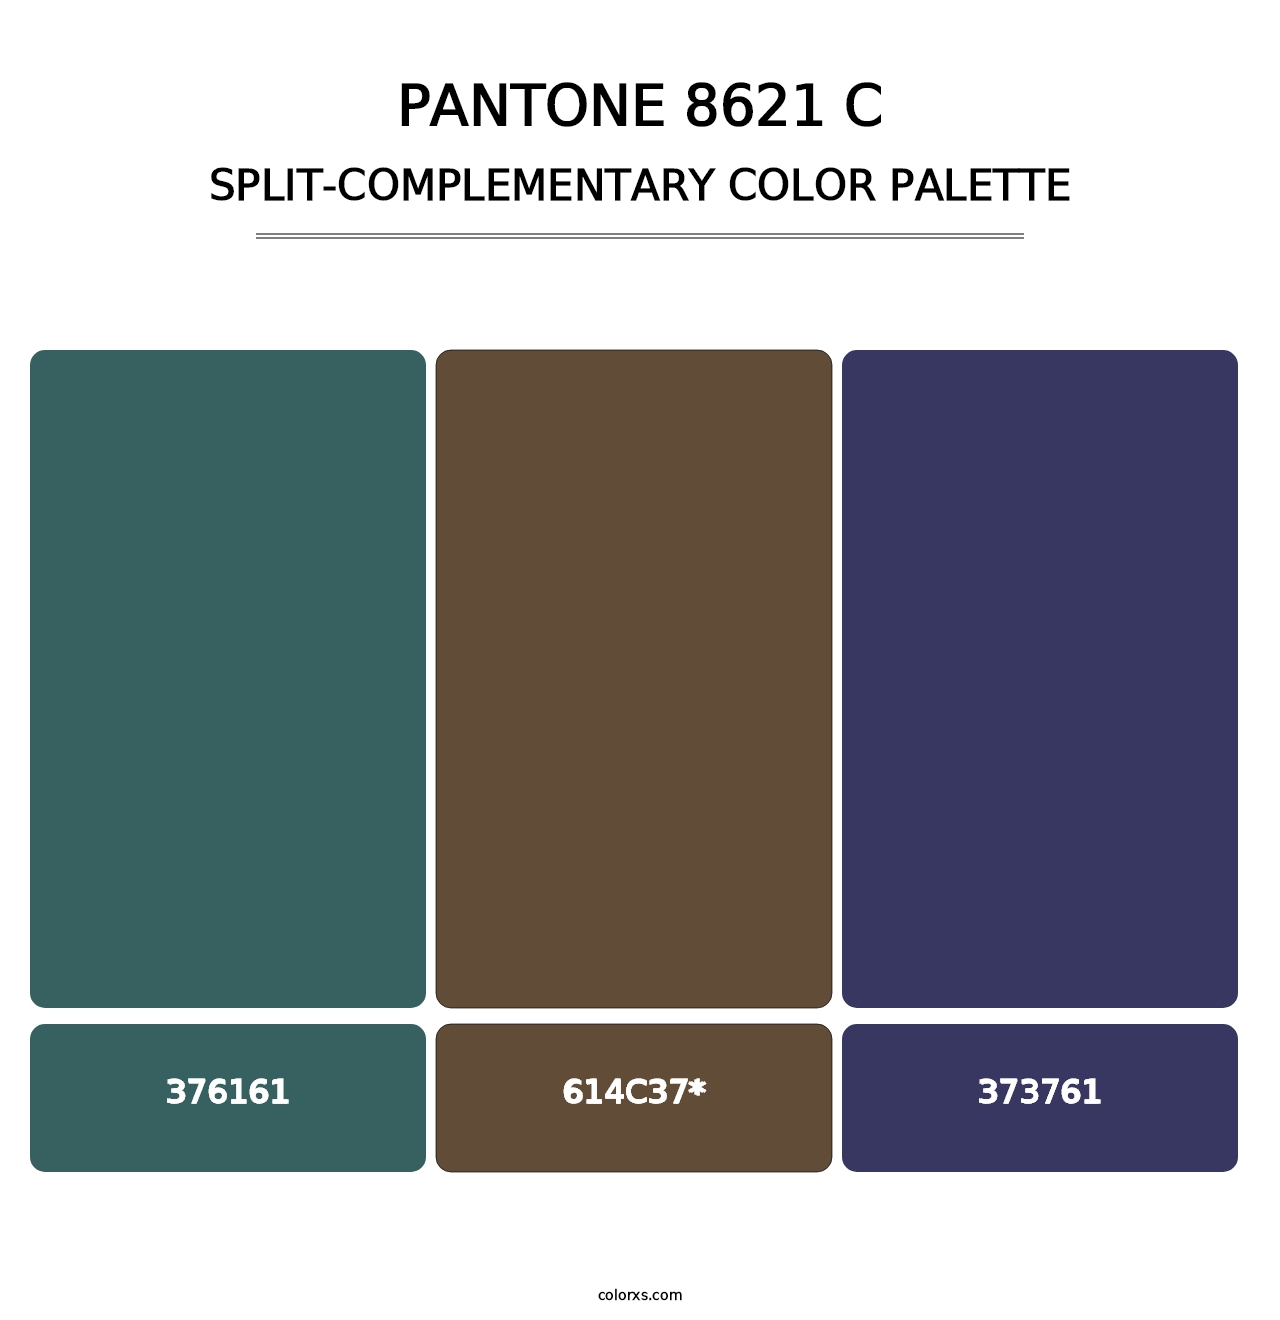 PANTONE 8621 C - Split-Complementary Color Palette